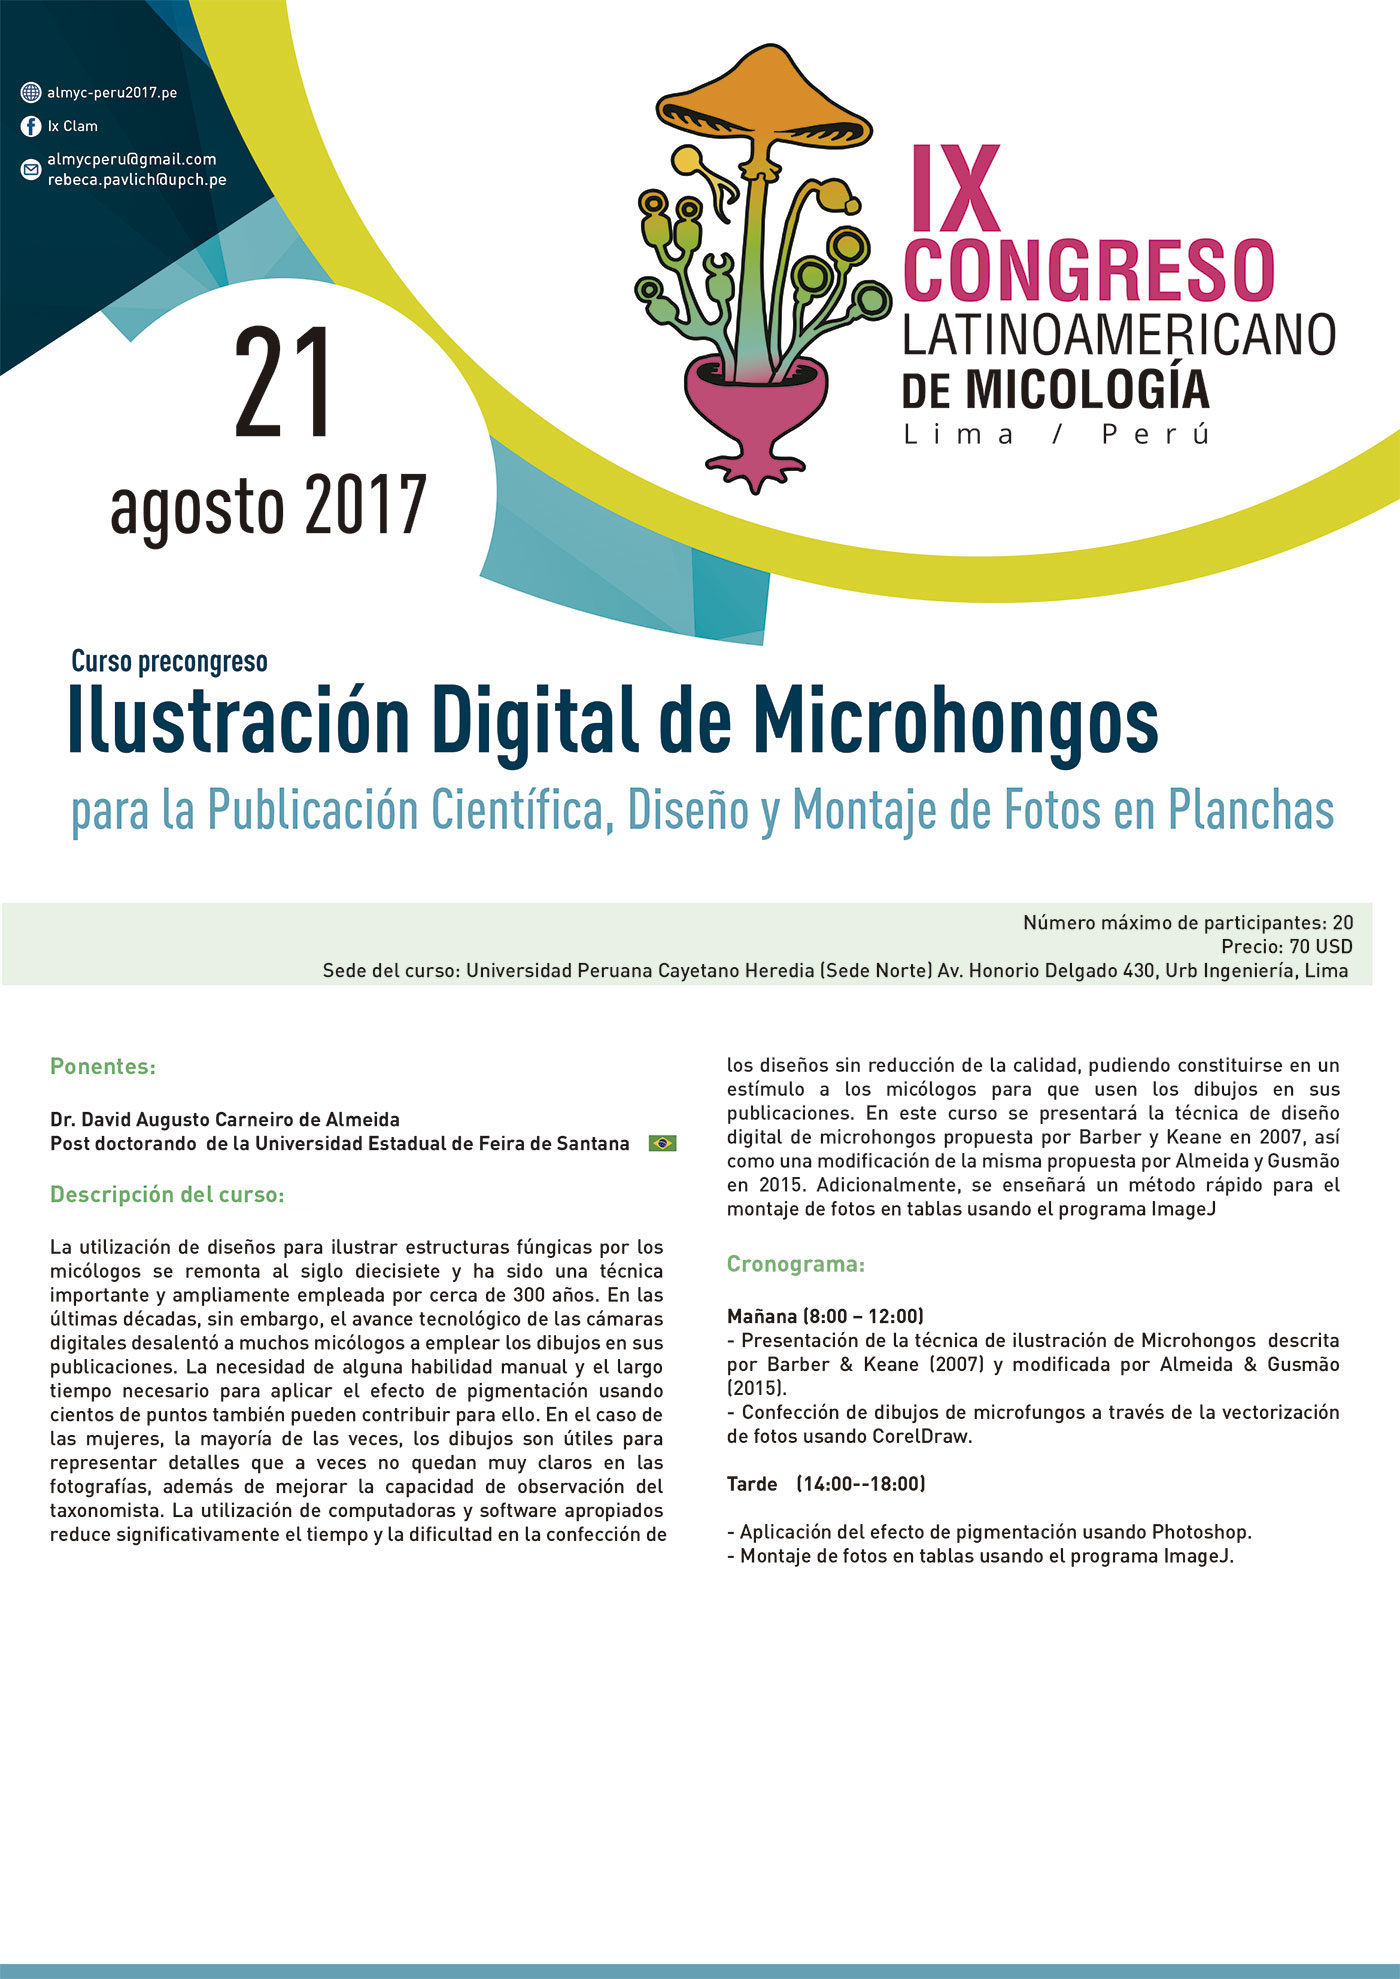 ILUSTRACION DIGITAL DE MICROHONGOS PARA LA PUBLICACION CIENTIFICA DISEO Y ONTAJE DE FOTOS EN PLANCHAS